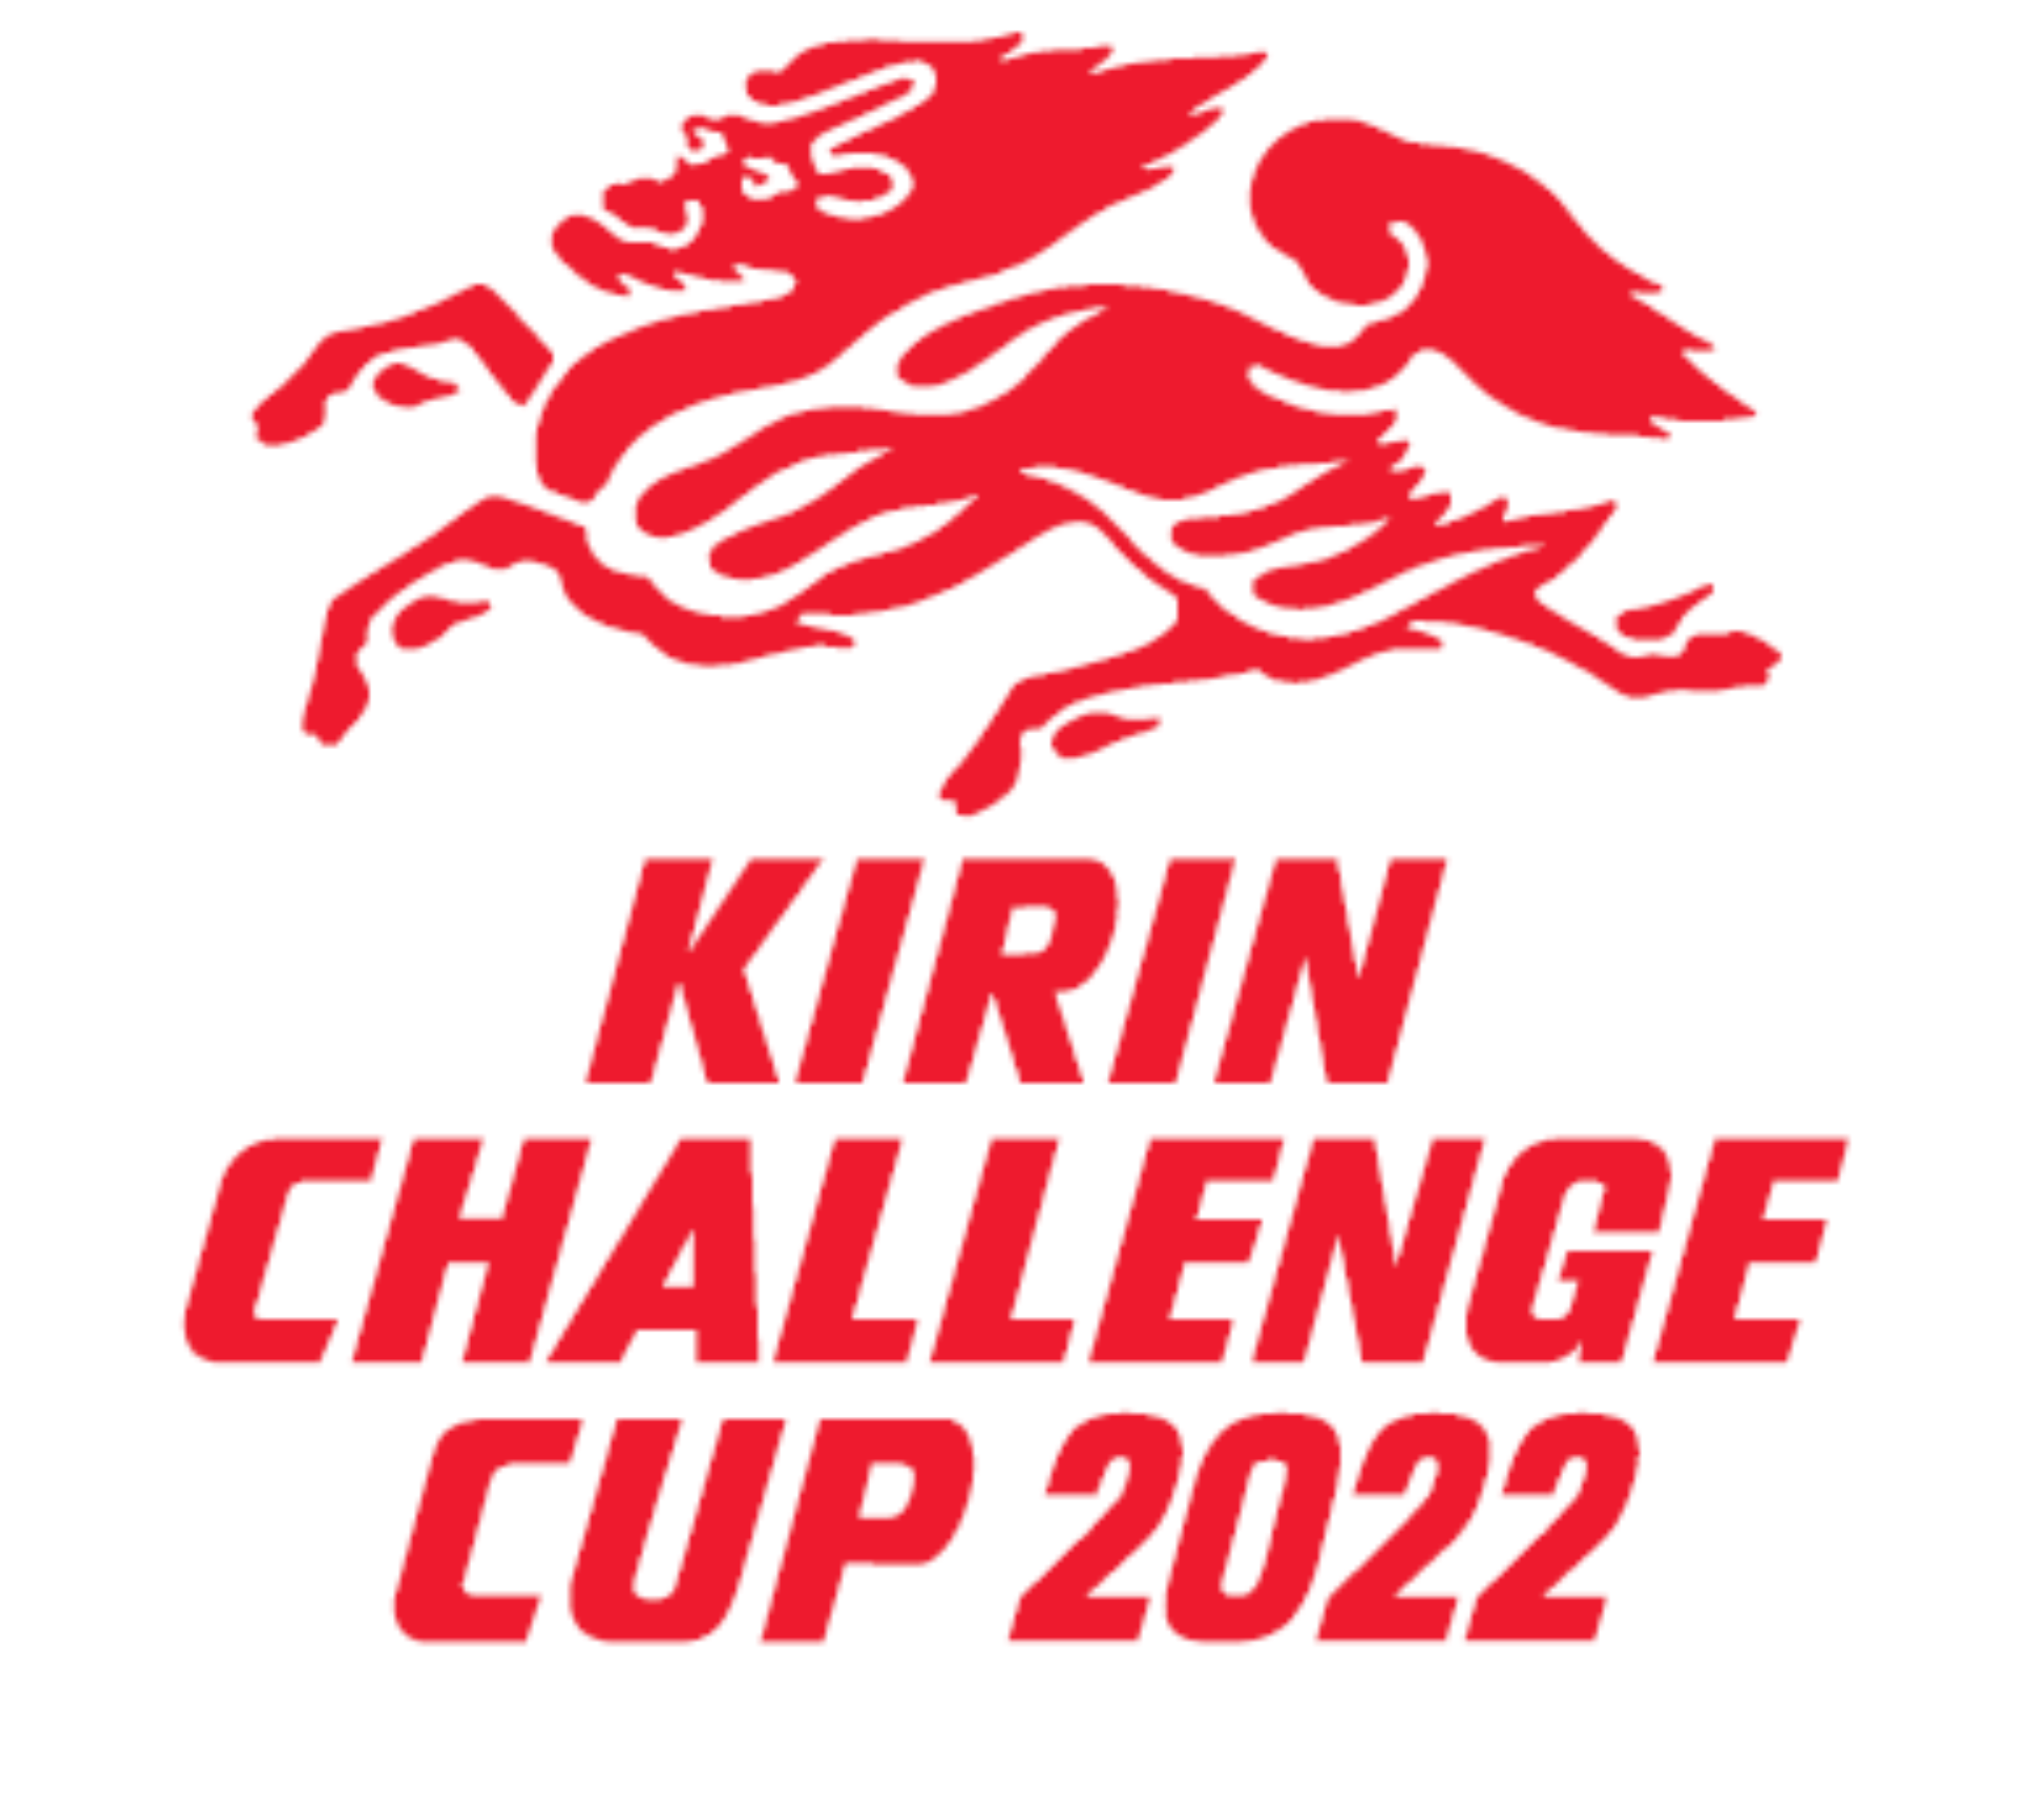 6月6日 月 開催 キリンチャレンジカップ22 サッカー日本代表の対戦国がブラジル代表に決定 キリンホールディングス株式会社のプレスリリース